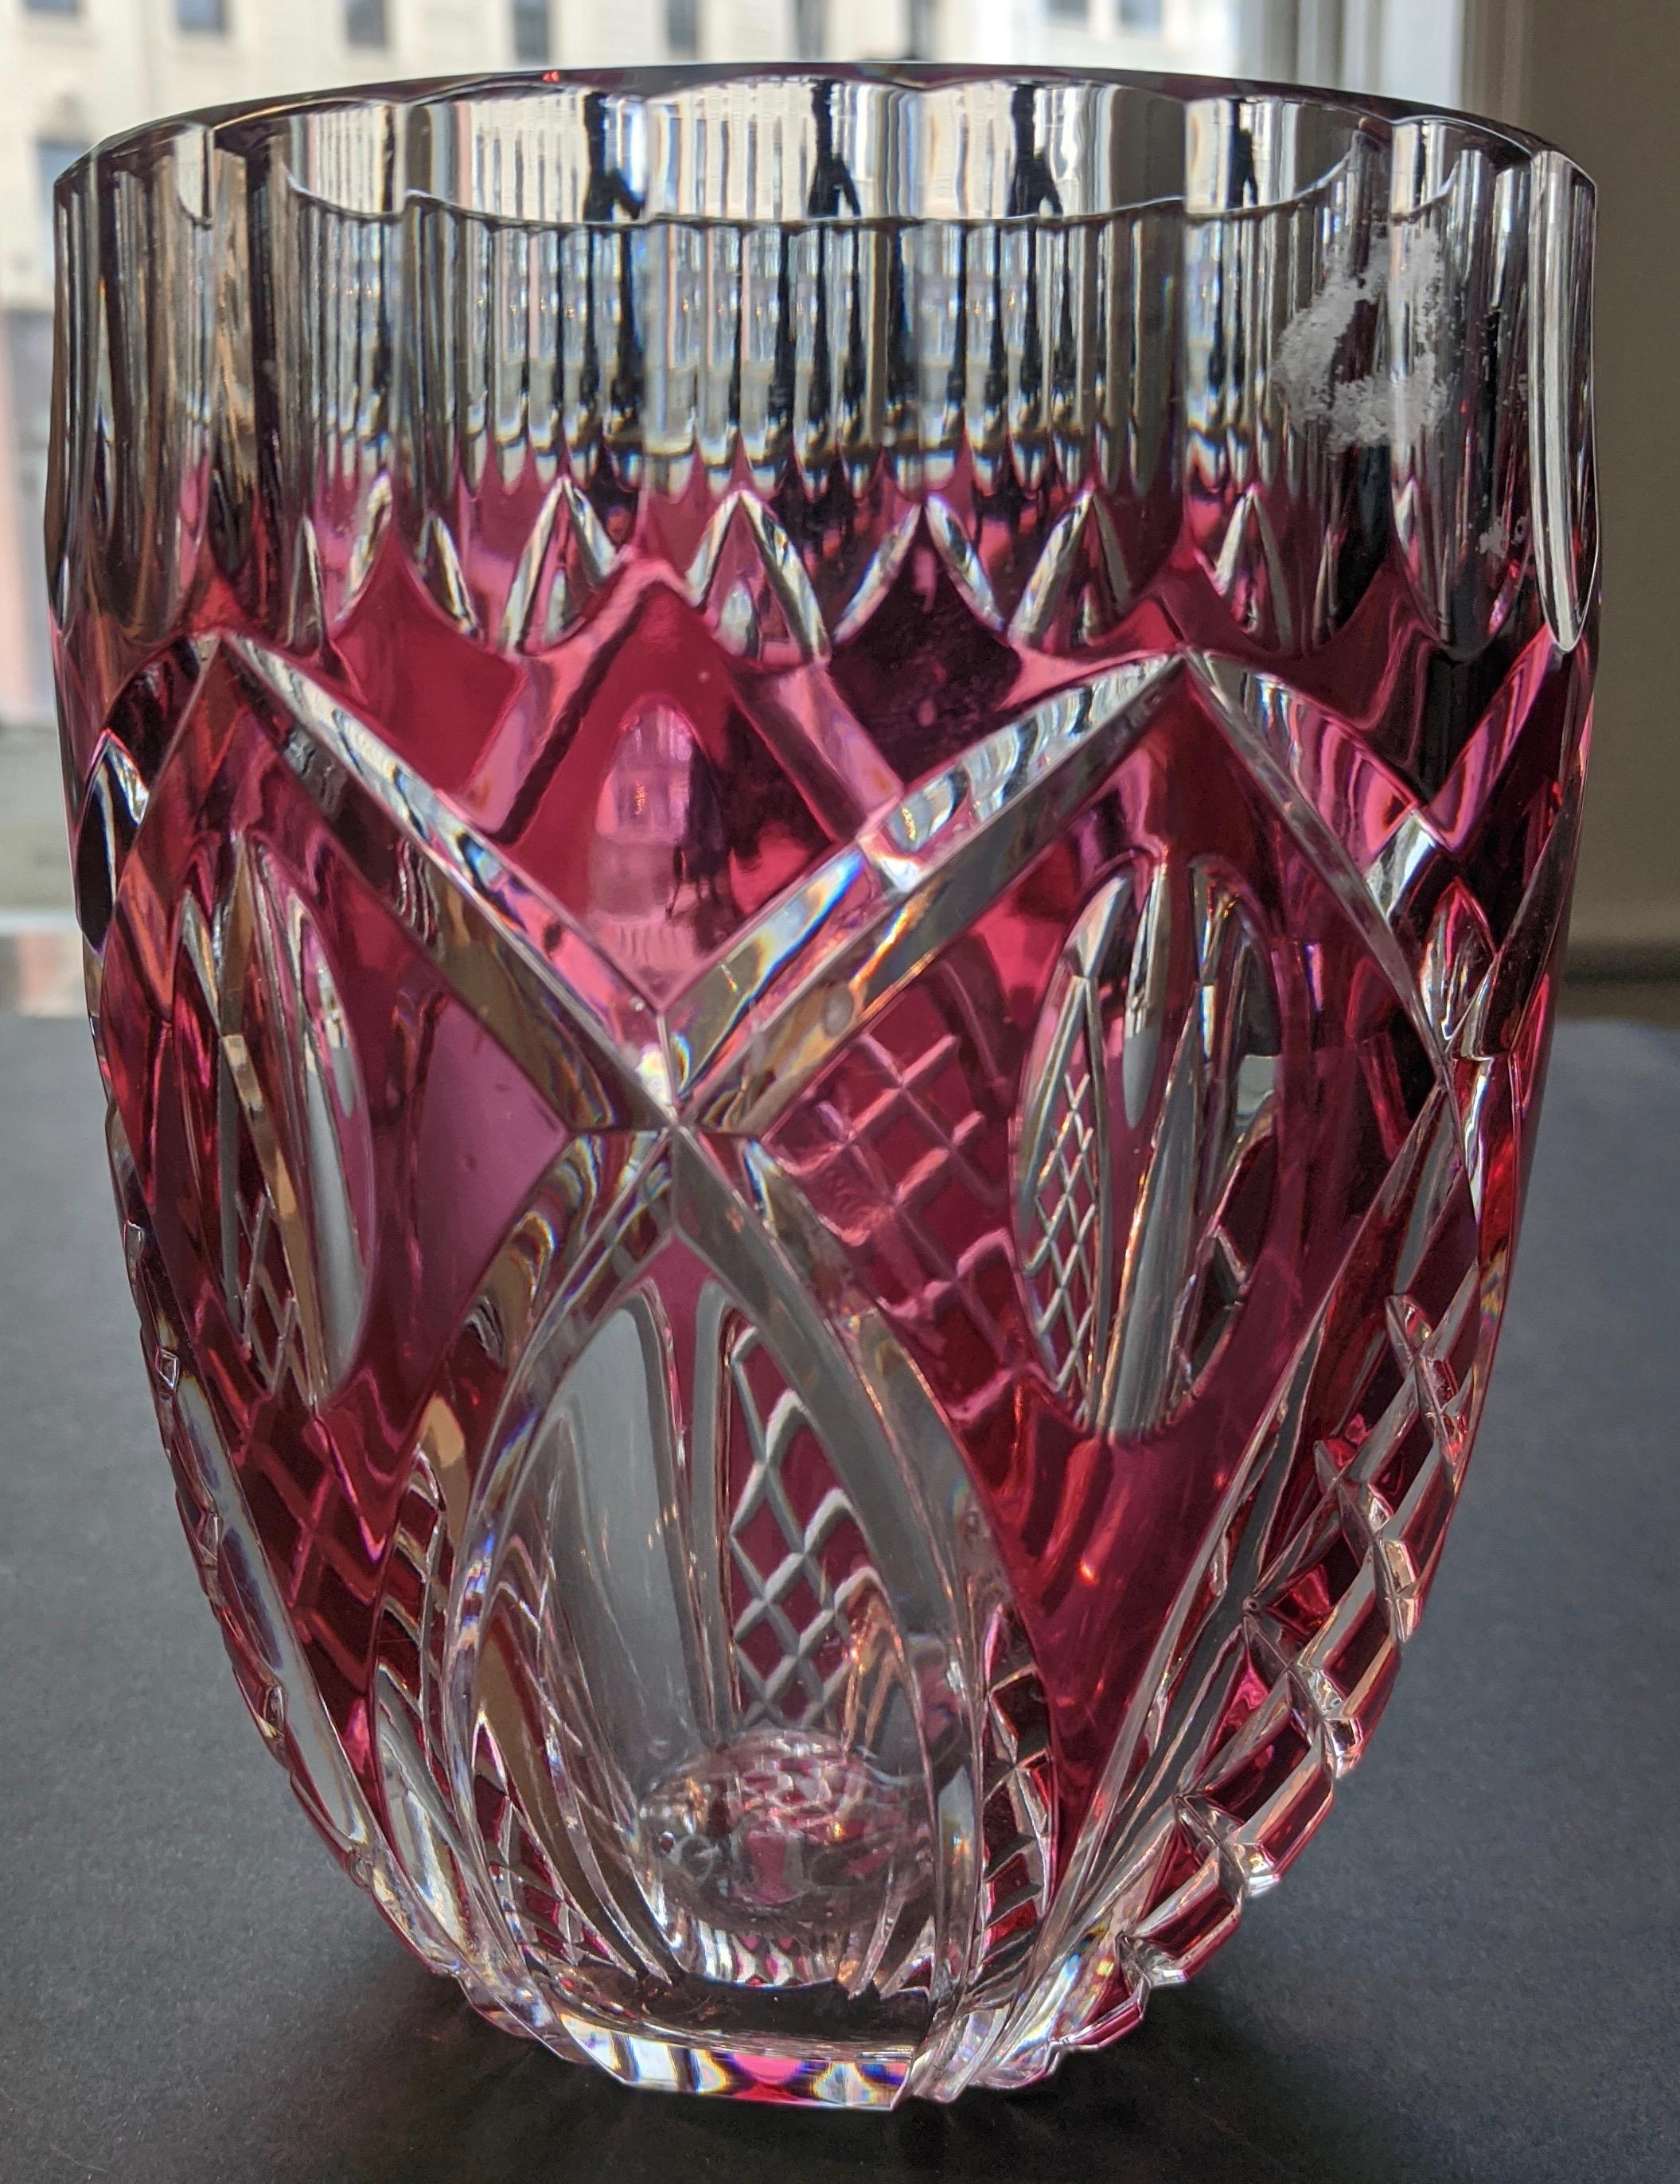 Ce vase en cristal Val St. Lambert provient de Belgique et a été fabriqué à la fin des années 1950, début des années 1960. Il s'agit d'un verre épais d'une couleur framboise intense. La pièce est fabriquée à la main et en cristal facetté, présentant